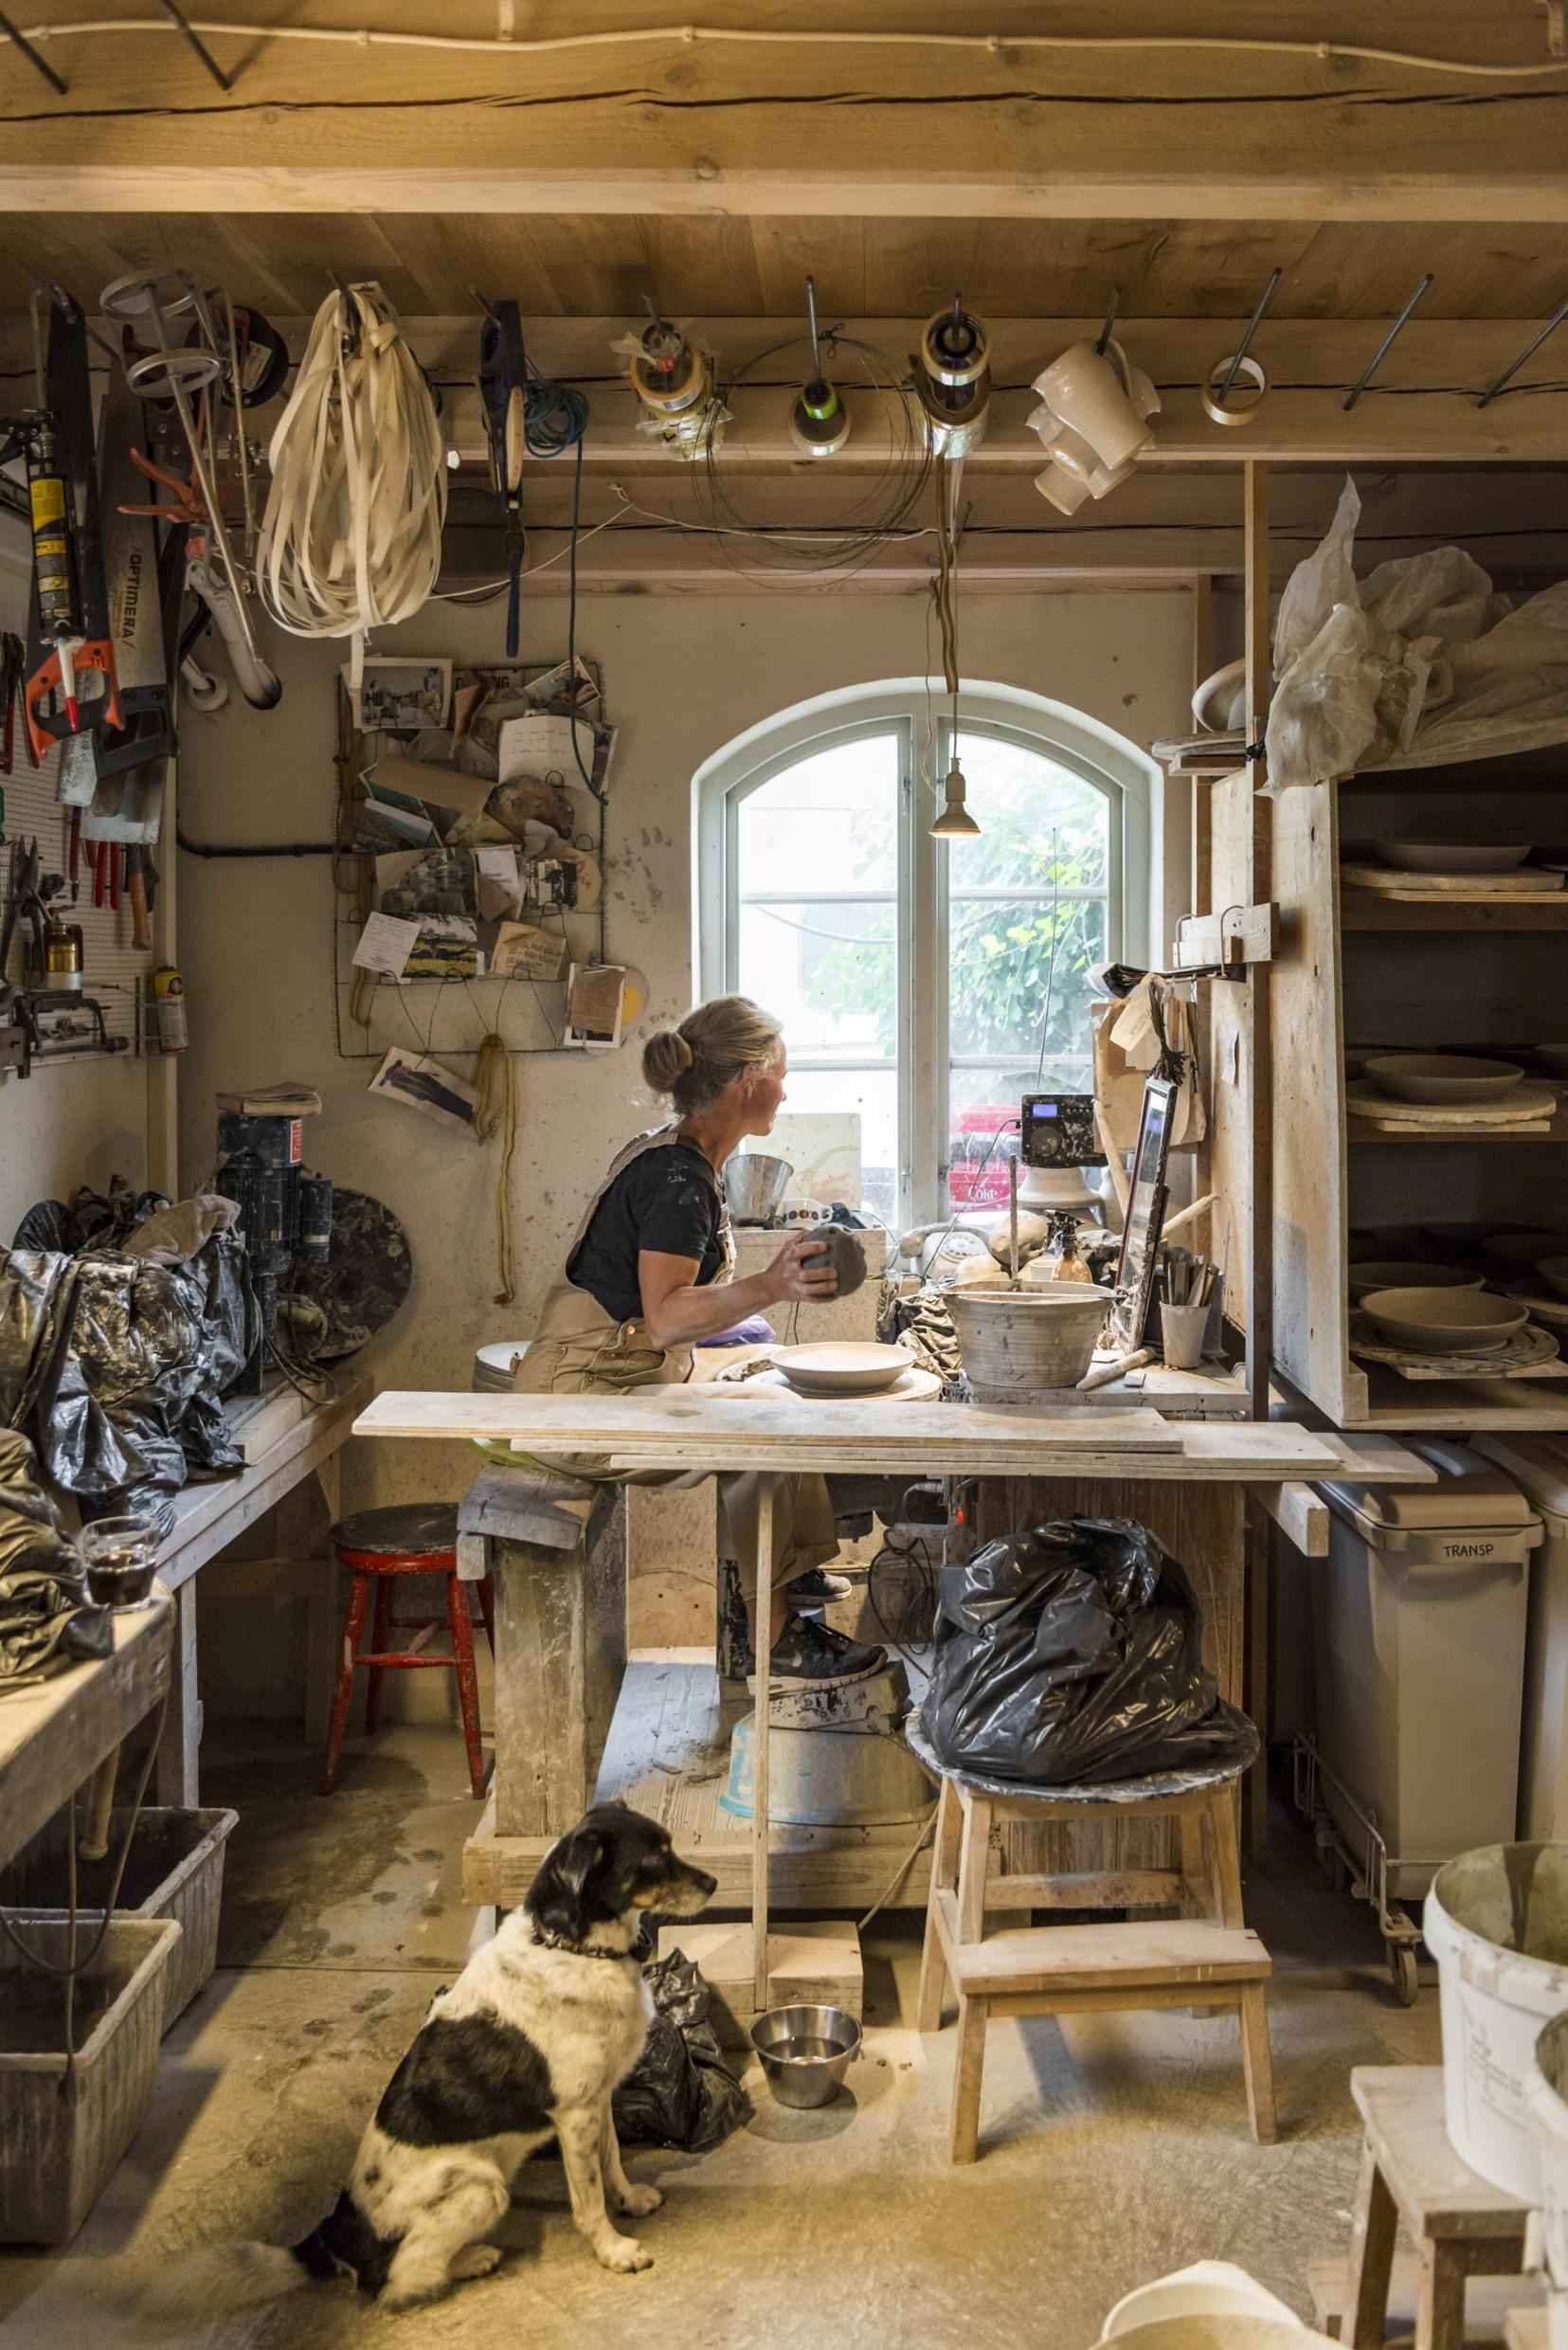 Eine Frau sitzt an einem Fenster und arbeitet in ihrem Töpferatelier. Es gibt viele Werkzeuge und Keramik im Raum. Neben ihr sitzt ein Hund auf dem Boden.